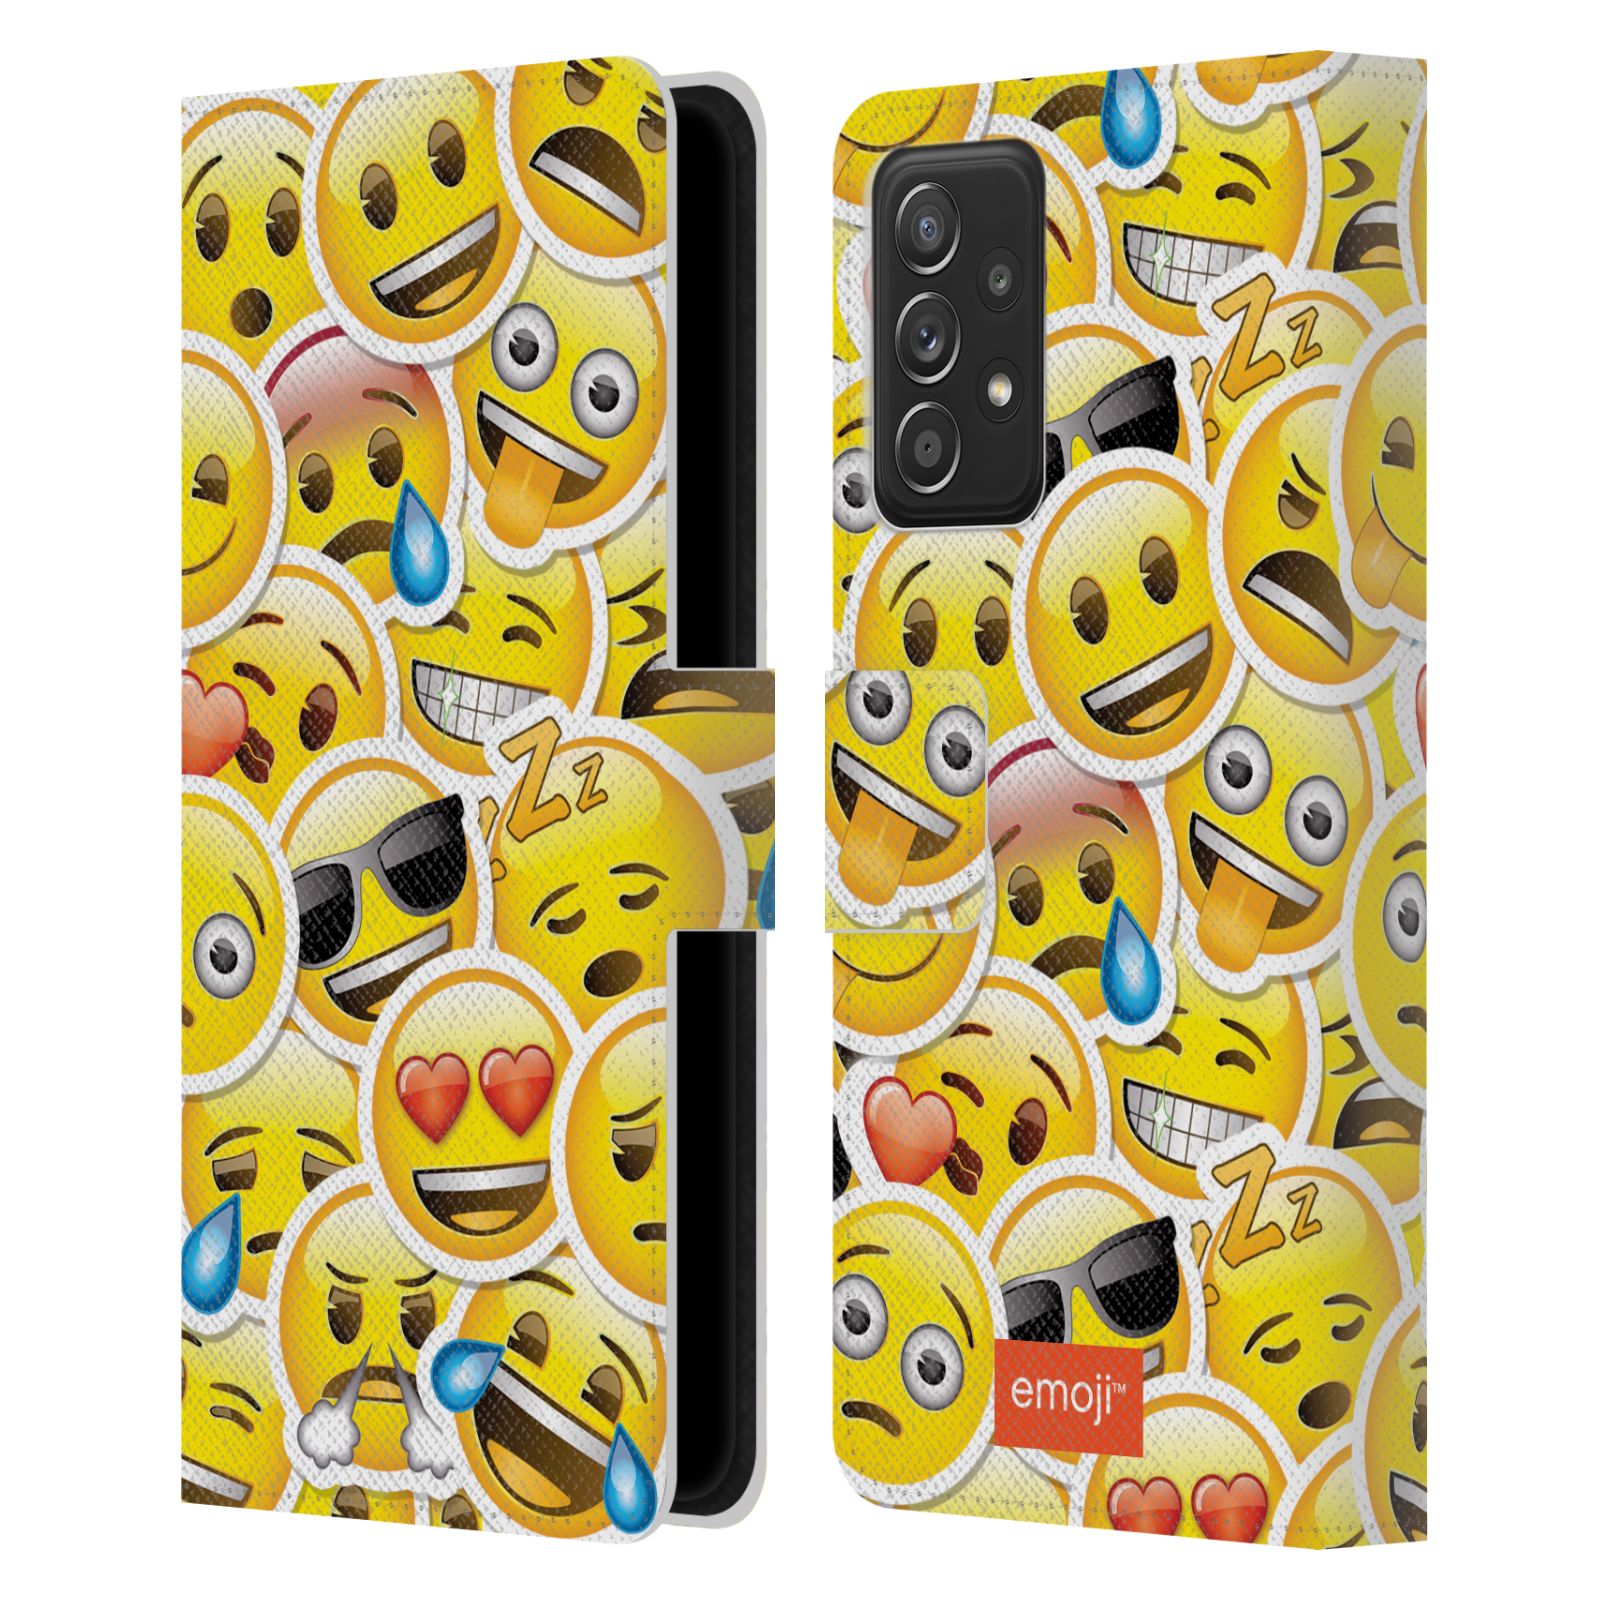 Pouzdro HEAD CASE na mobil Samsung Galaxy A52 / A52 5G / A52s 5G  Emoji velcí smajlíci